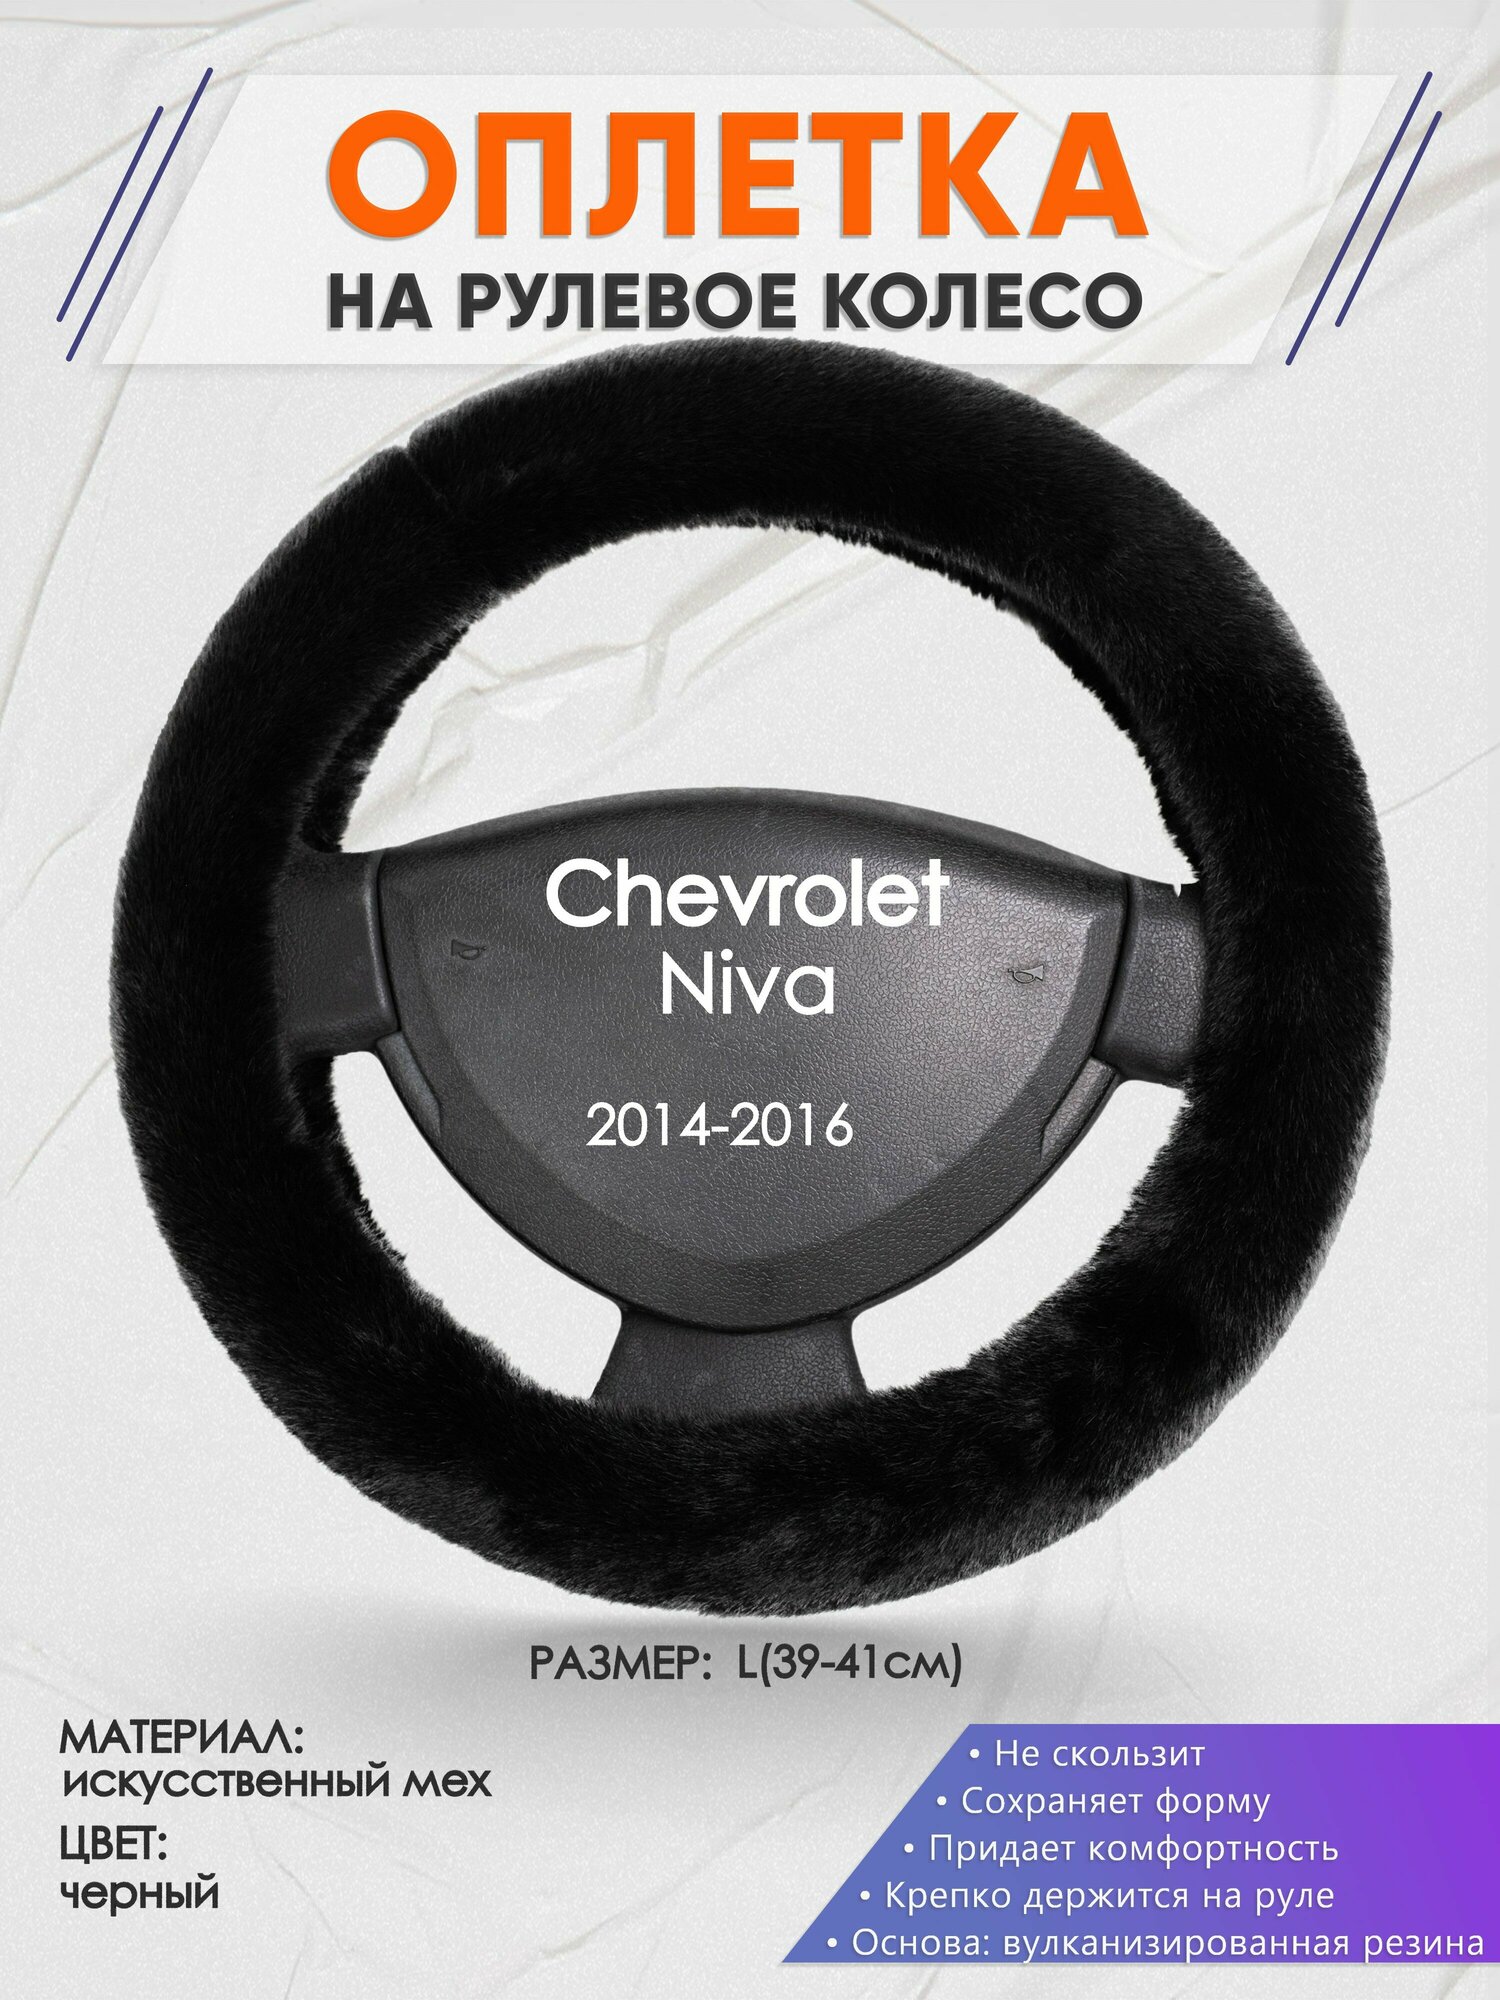 Оплетка на руль для Chevrolet Niva (Шевроле Нива) 2014-2016 L(39-41см) Искусственный мех 41